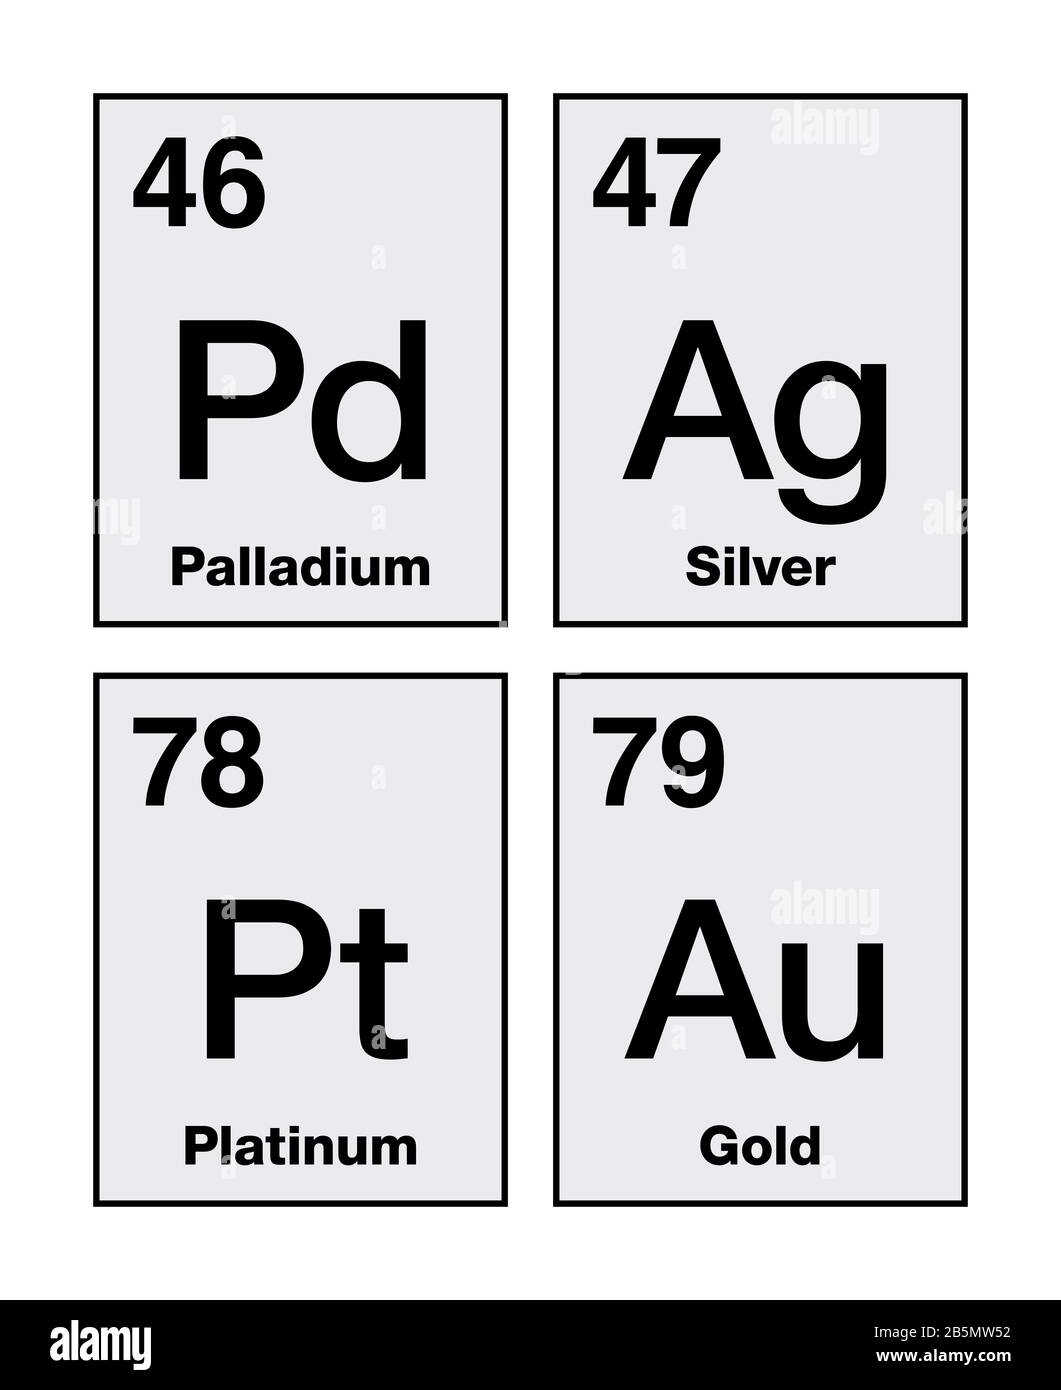 Oro, plata, platino y paladio en tabla periódica. Metales preciosos, elementos químicos de alto valor económico, también utilizados como moneda. Foto de stock